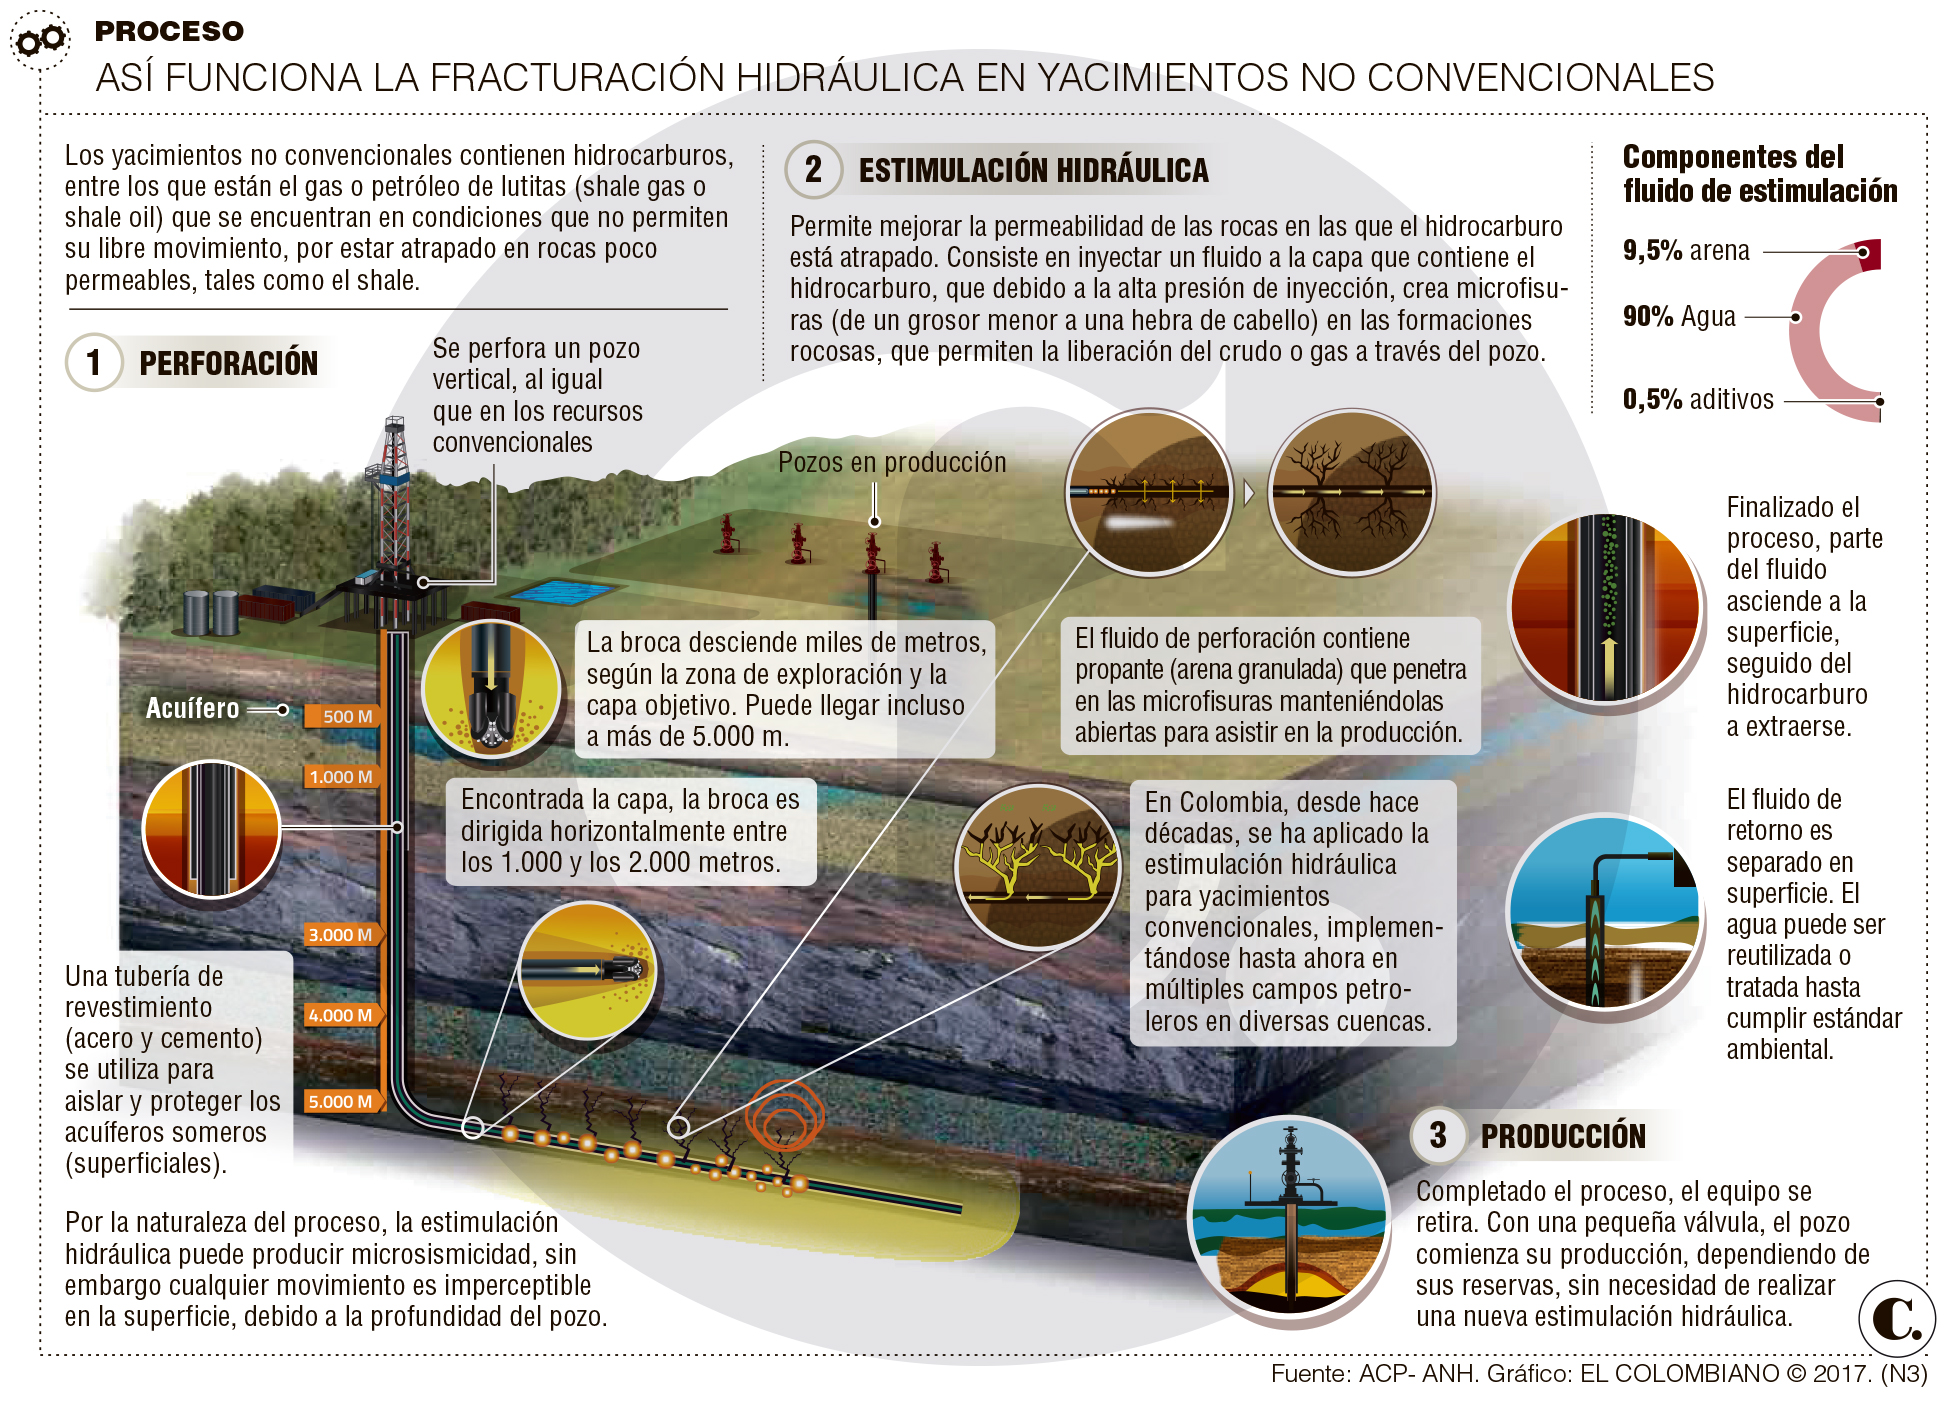 Fracking revive debate en Colombia